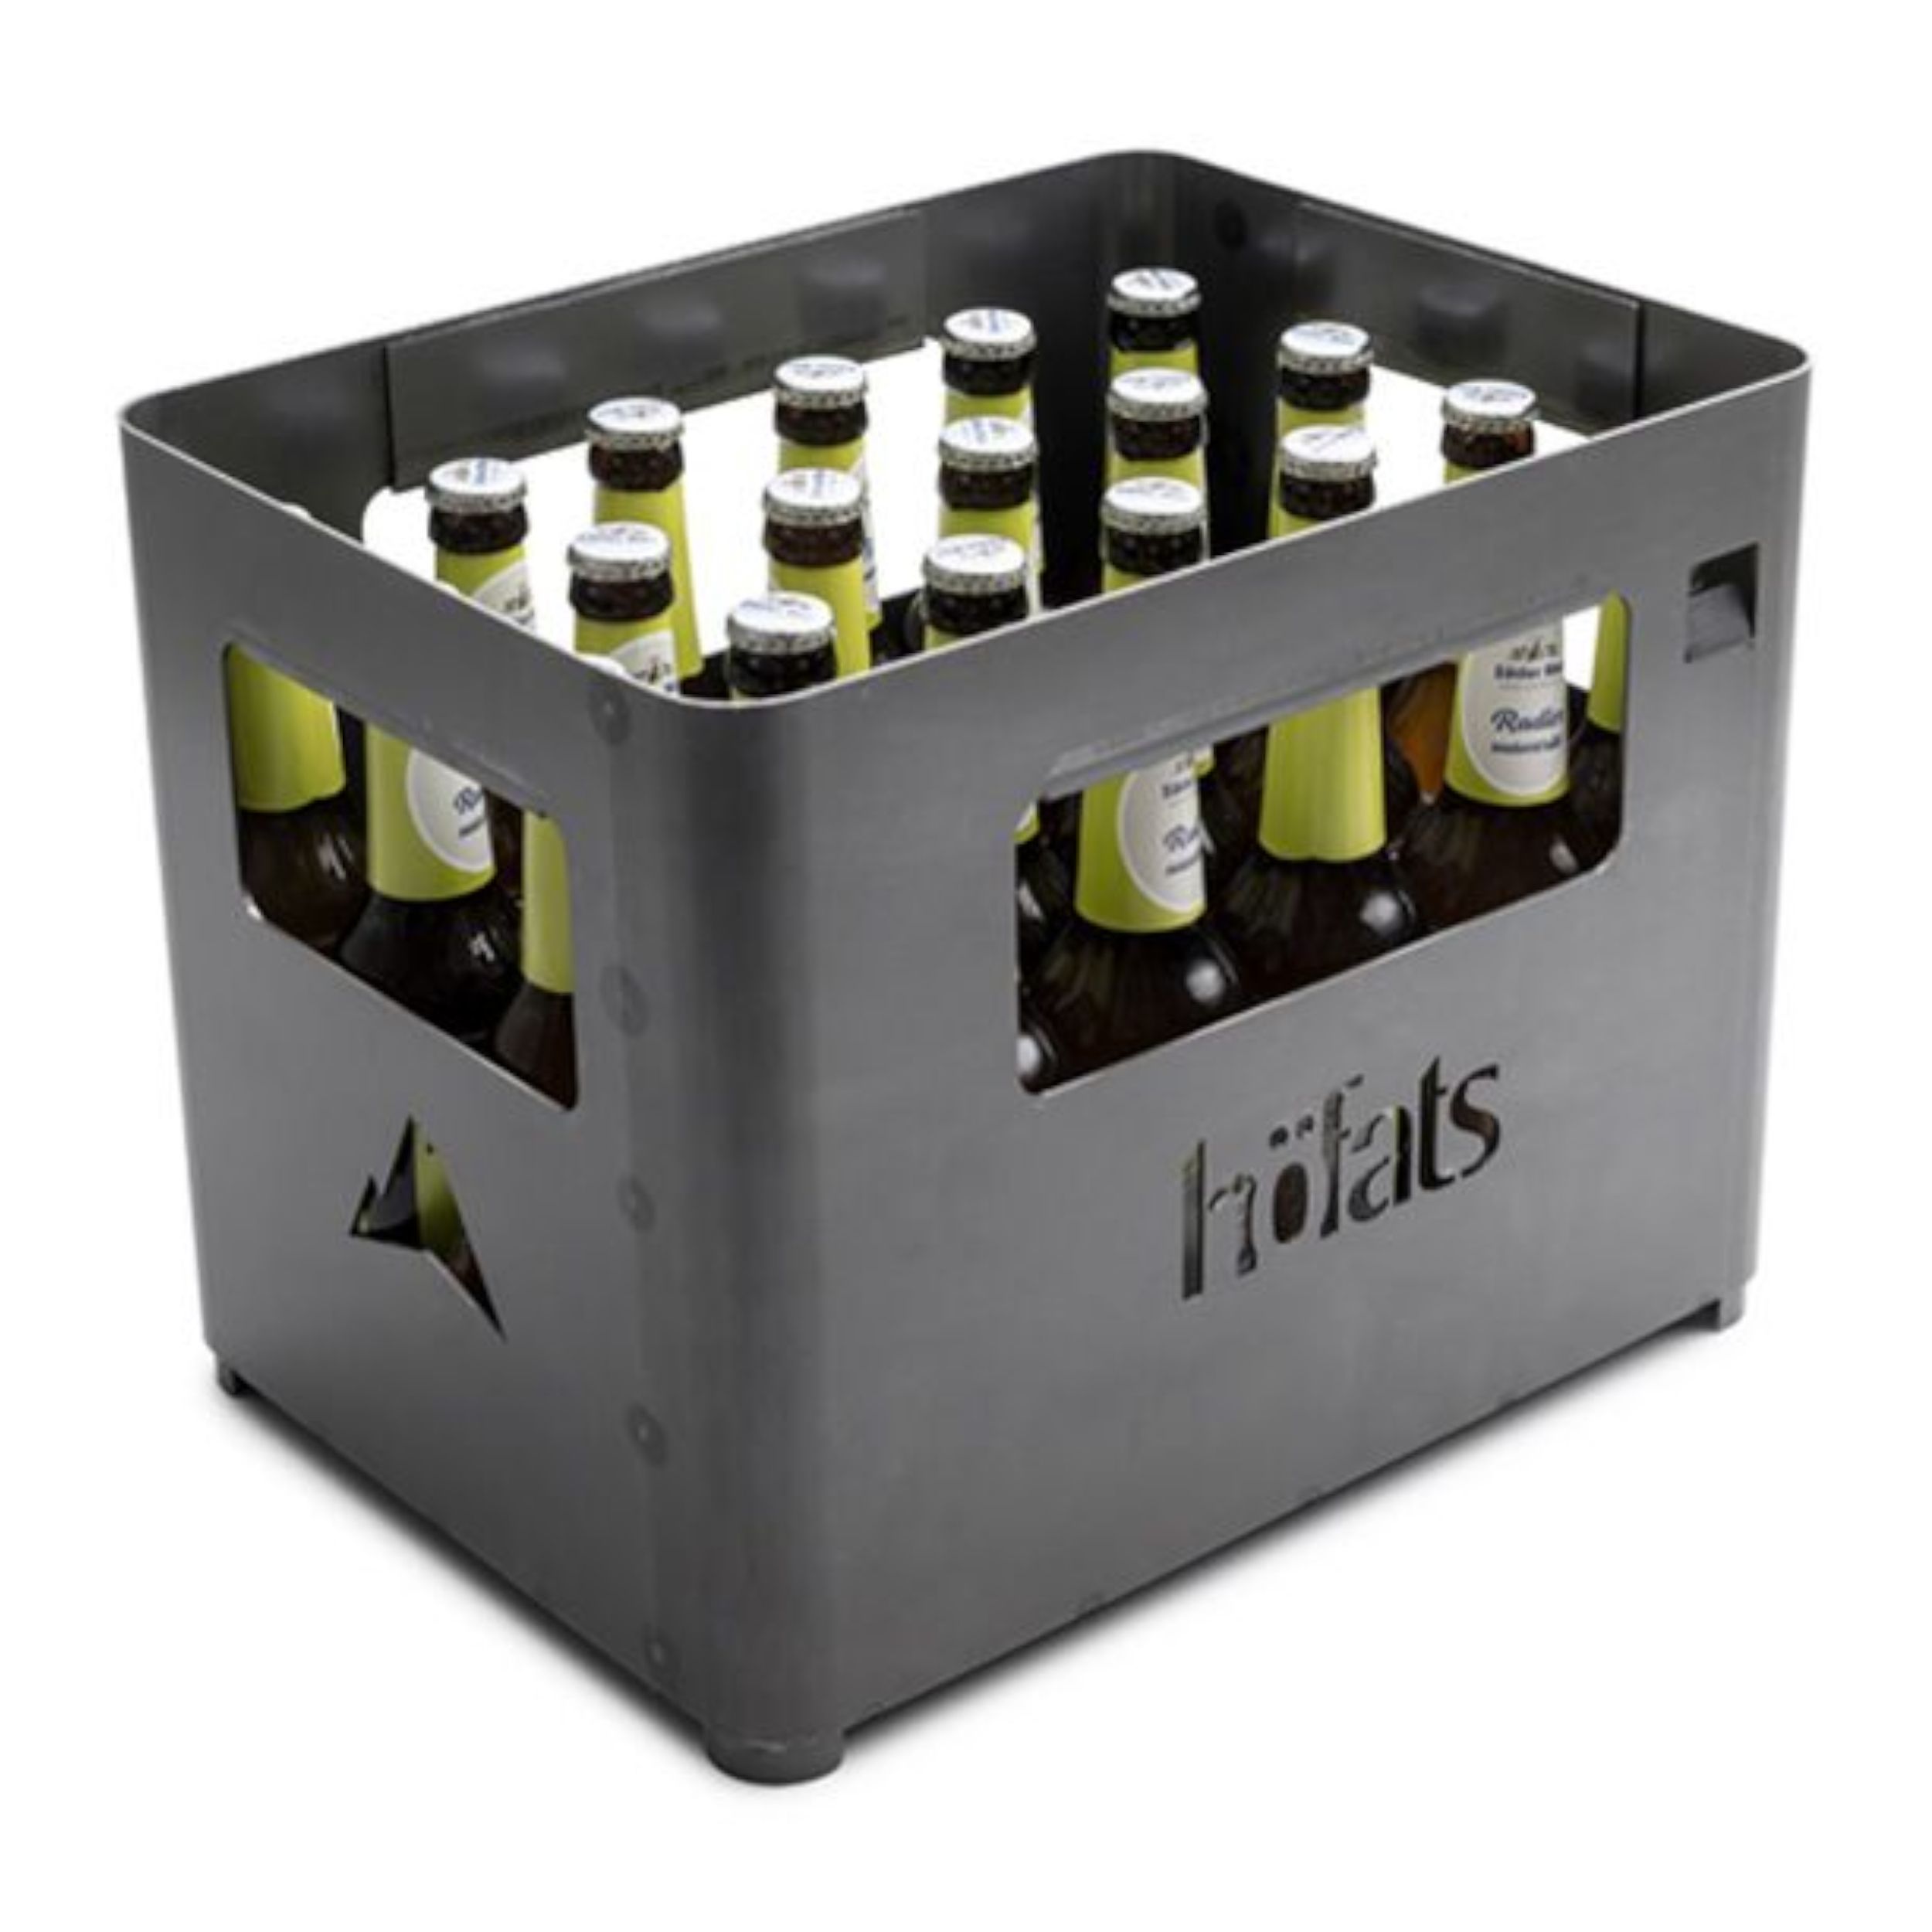 Feuerkorb Beer Box von Höfats als Freisteller mit Bier in schwarz